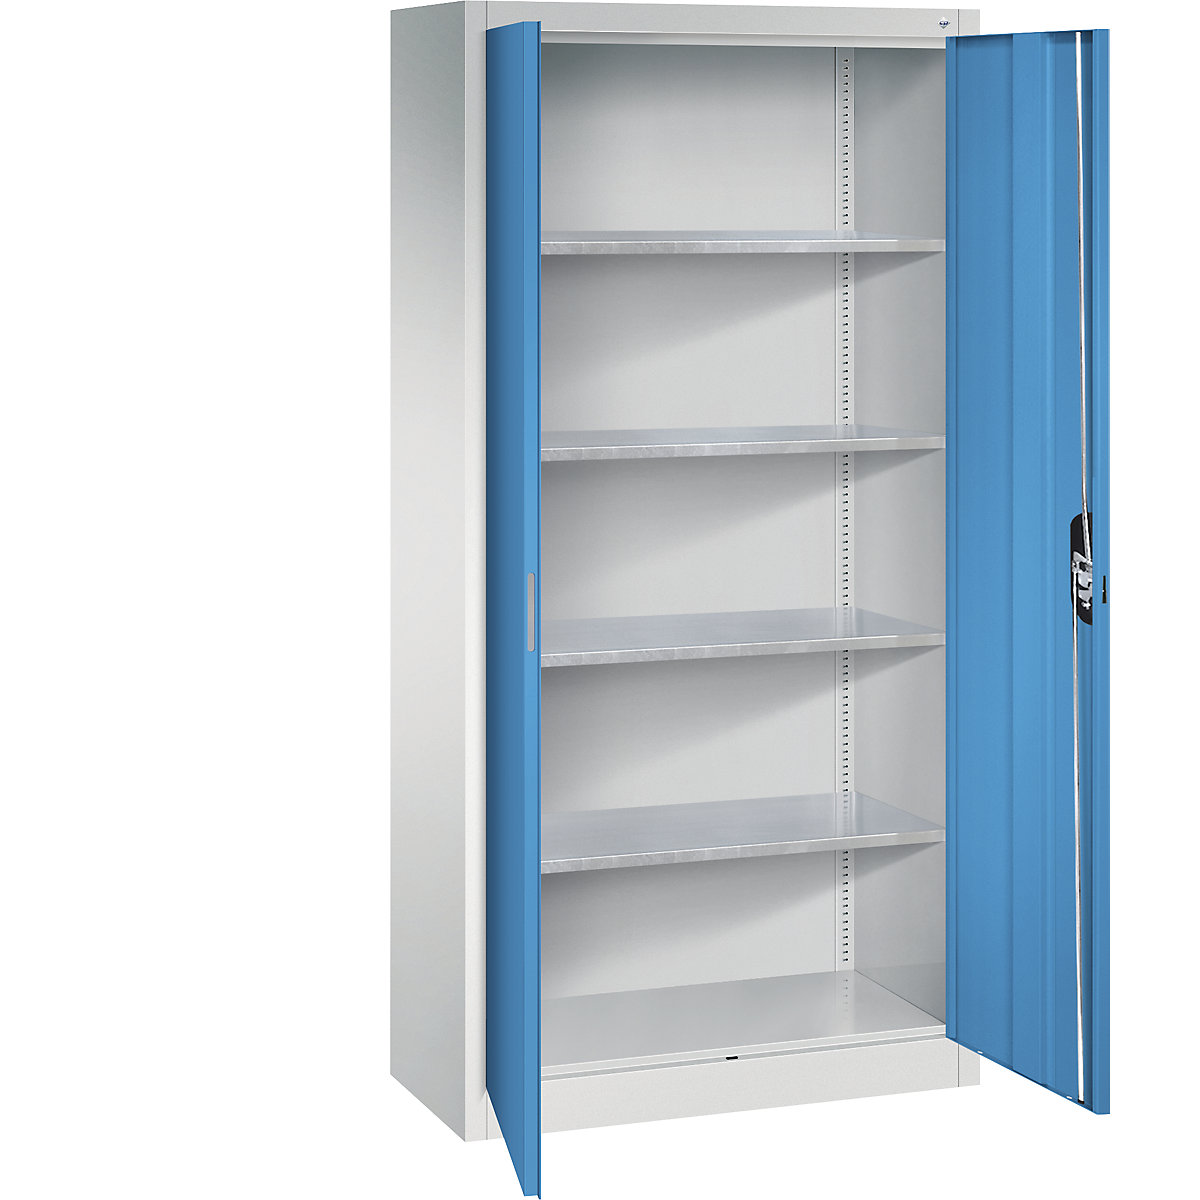 Dílenská skříň s otočnými dveřmi – C+P, v x š x h 1950 x 930 x 400 mm, světlá šedá / světlá modrá-9